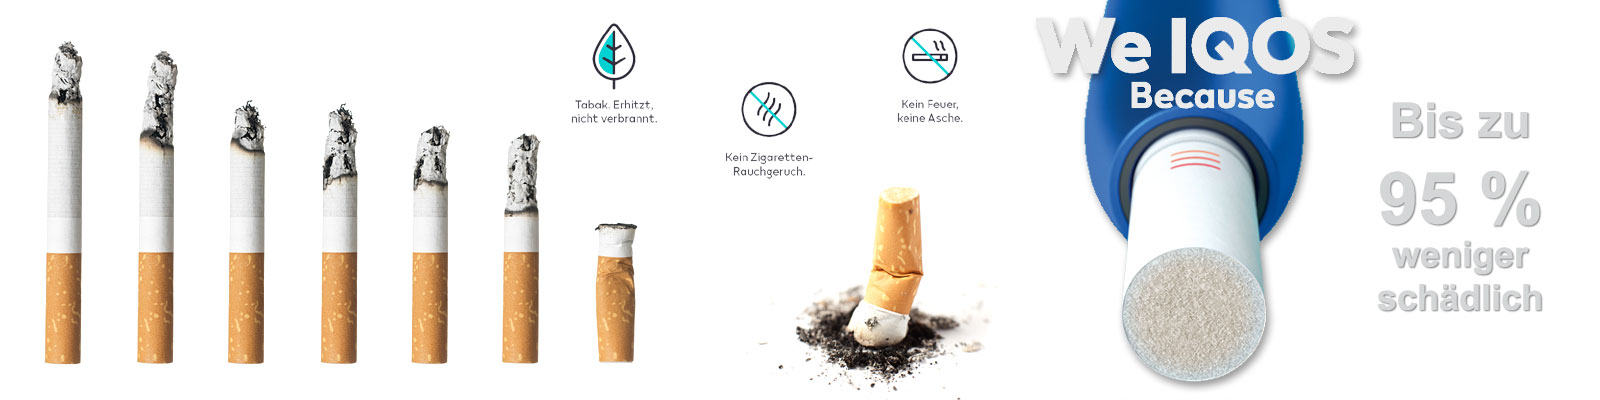 https://www.tabak-brucker.de/images/kategorie_text/ab-unterschiede-von-iqos-und-einer-zigarette.jpg